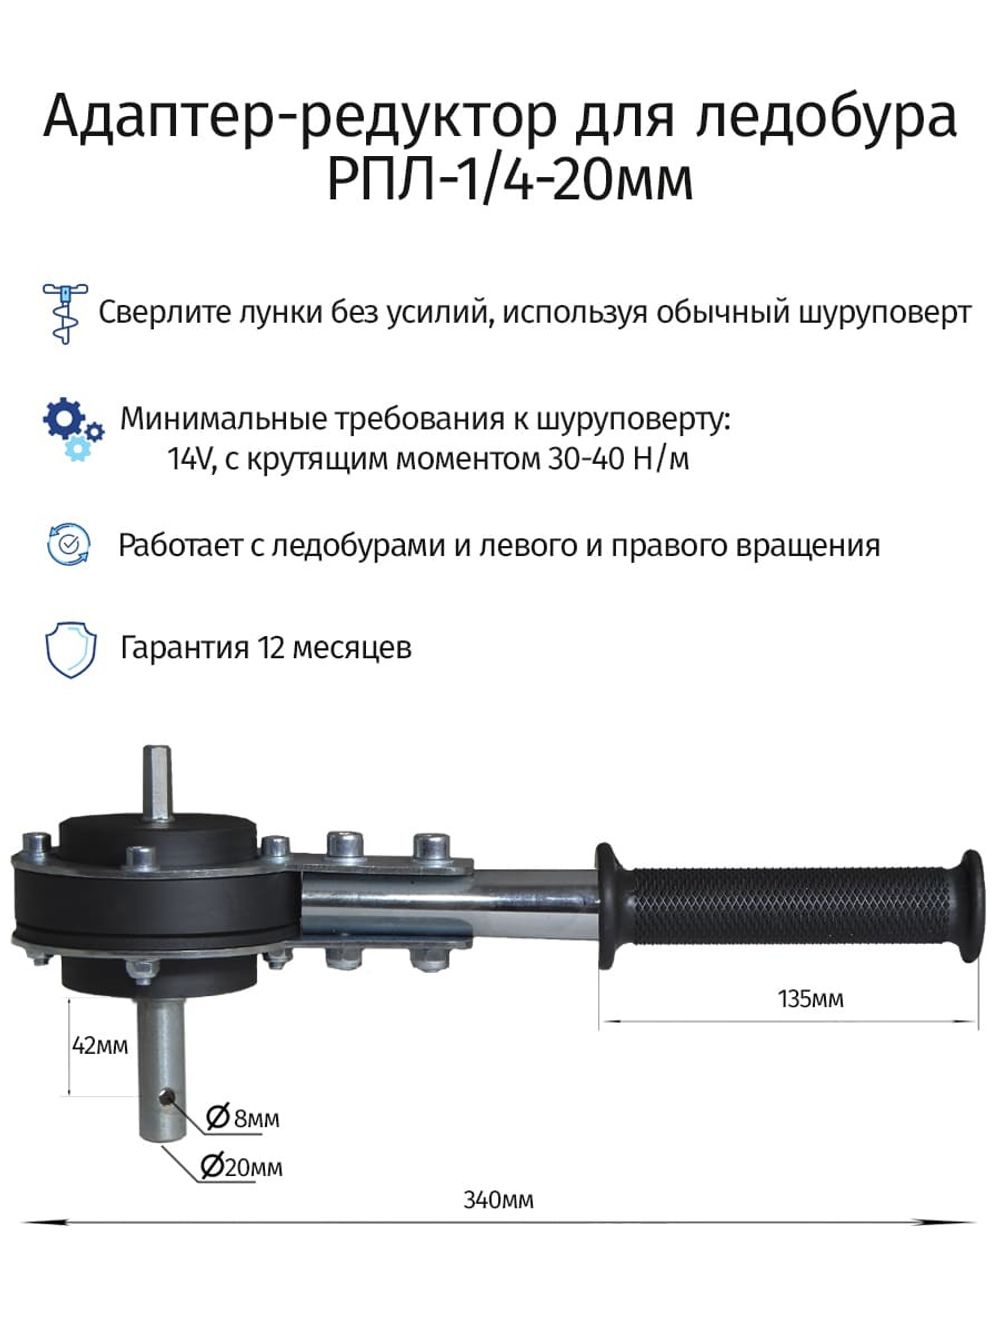 Адаптер FASTBUR для ледобуров Mora Ice с ручкой под шуруповерт 18 мм